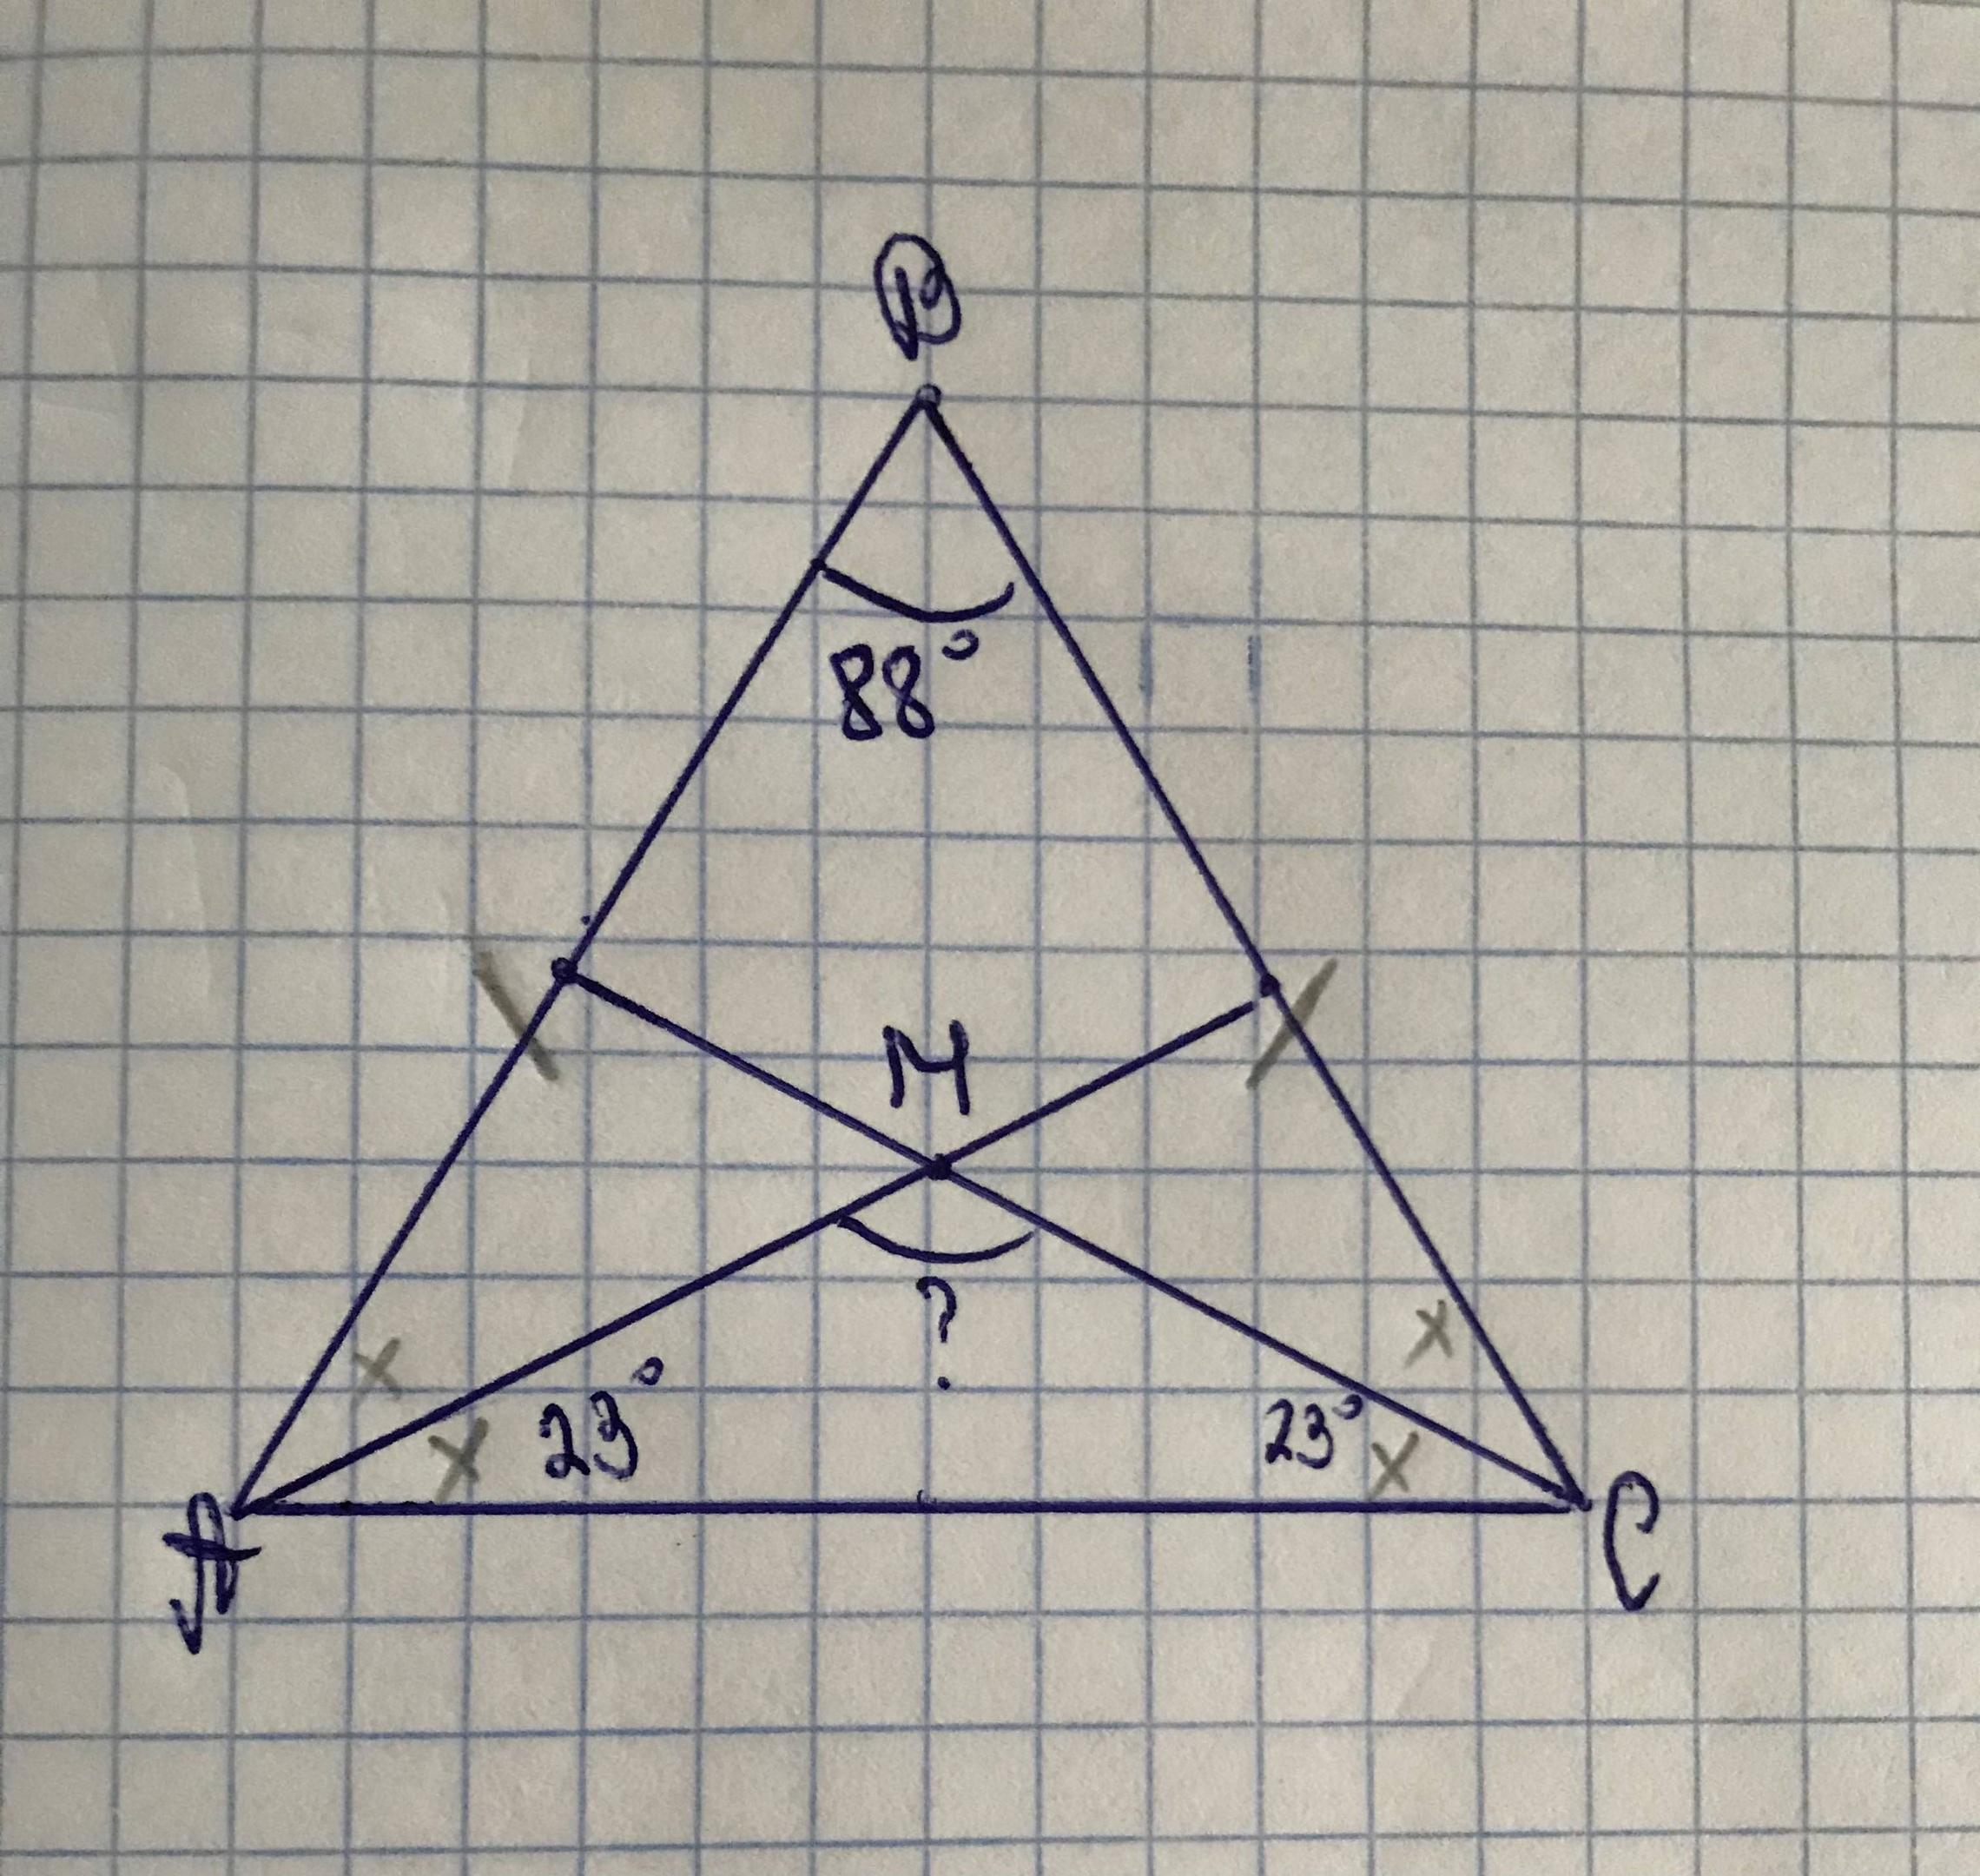 Треугольник абс угол б 80. В треугольнике стороны аб и БС равны.